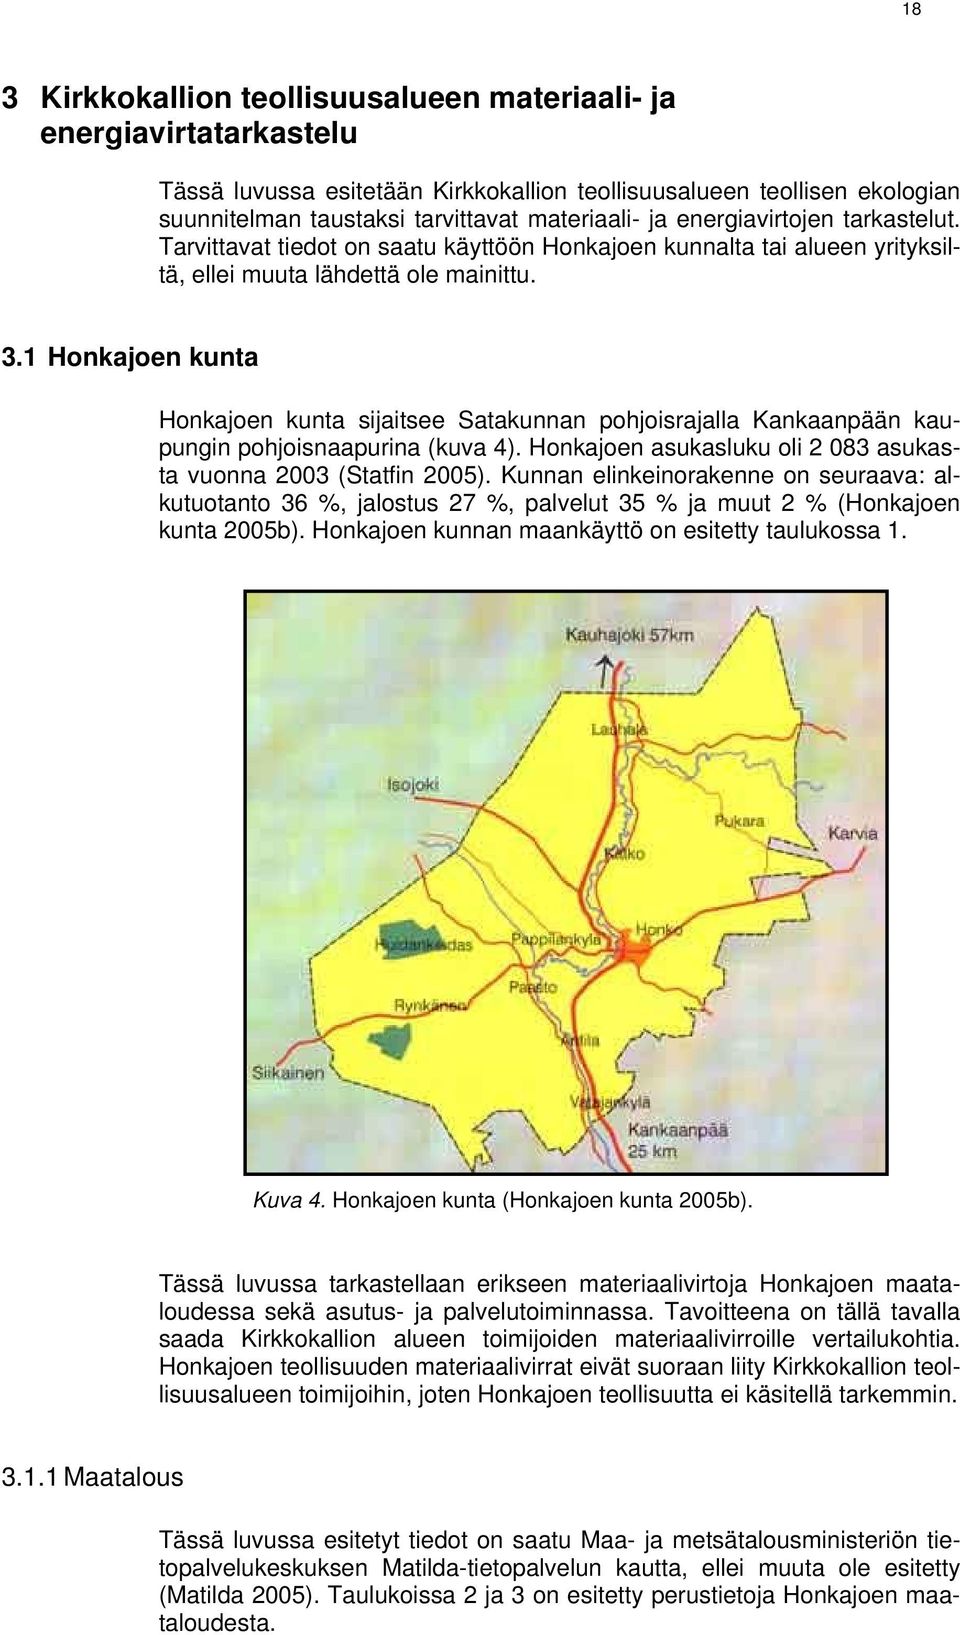 1 Honkajoen kunta Honkajoen kunta sijaitsee Satakunnan pohjoisrajalla Kankaanpään kaupungin pohjoisnaapurina (kuva 4). Honkajoen asukasluku oli 2 083 asukasta vuonna 2003 (Statfin 2005).